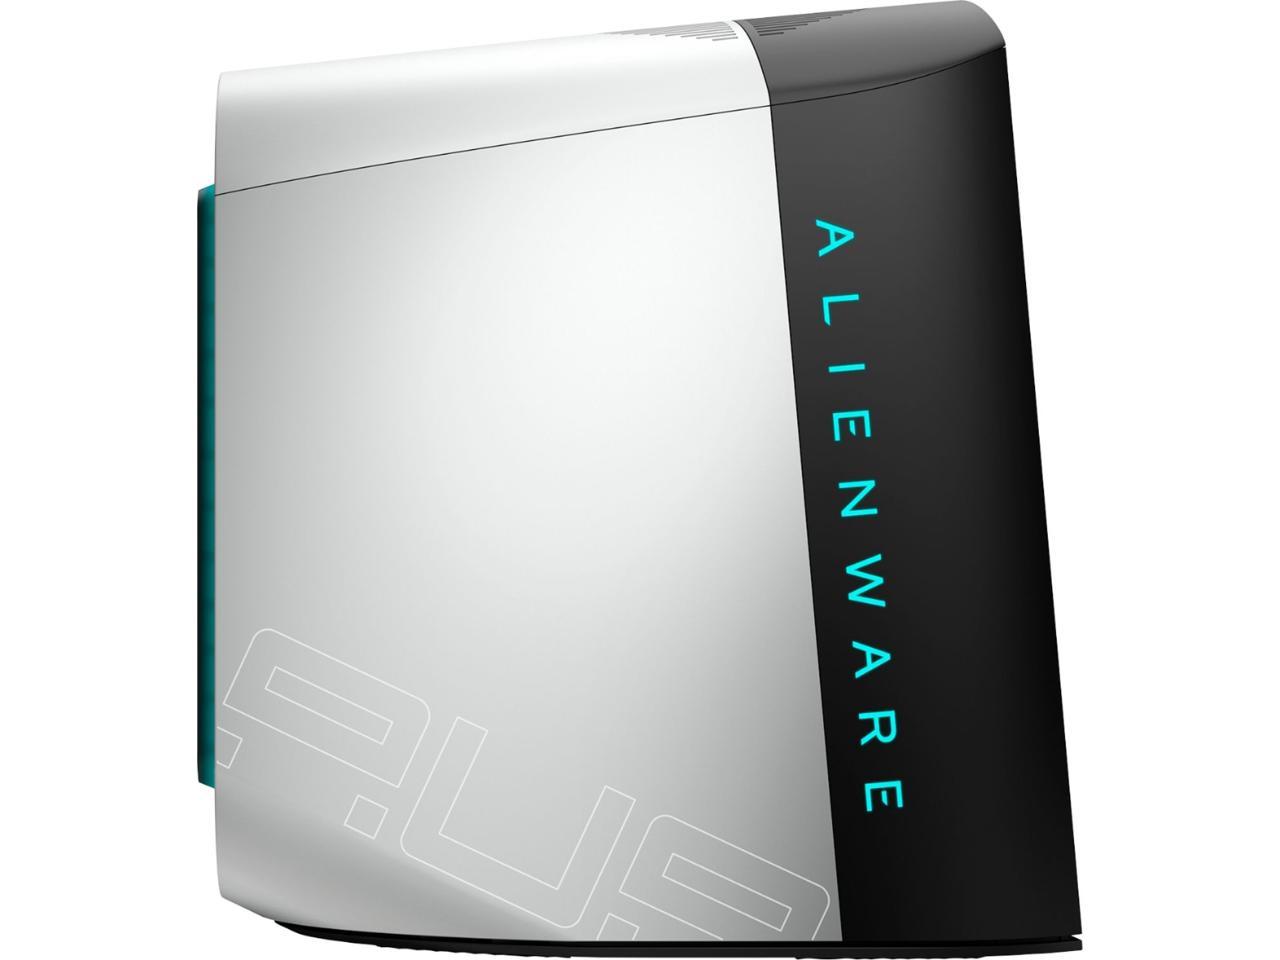 Alienware Aurora R11 Gaming Desktop, Intel i7-10700K, NVIDIA GeForce RTX 2070 Super 8GB GDDR6, 512GB NVMe SSD + 1TB SATA HDD, 16GB DDR4 XMP, DisplayPort, HDMI, AX Wi-Fi, Windows 10 Pro